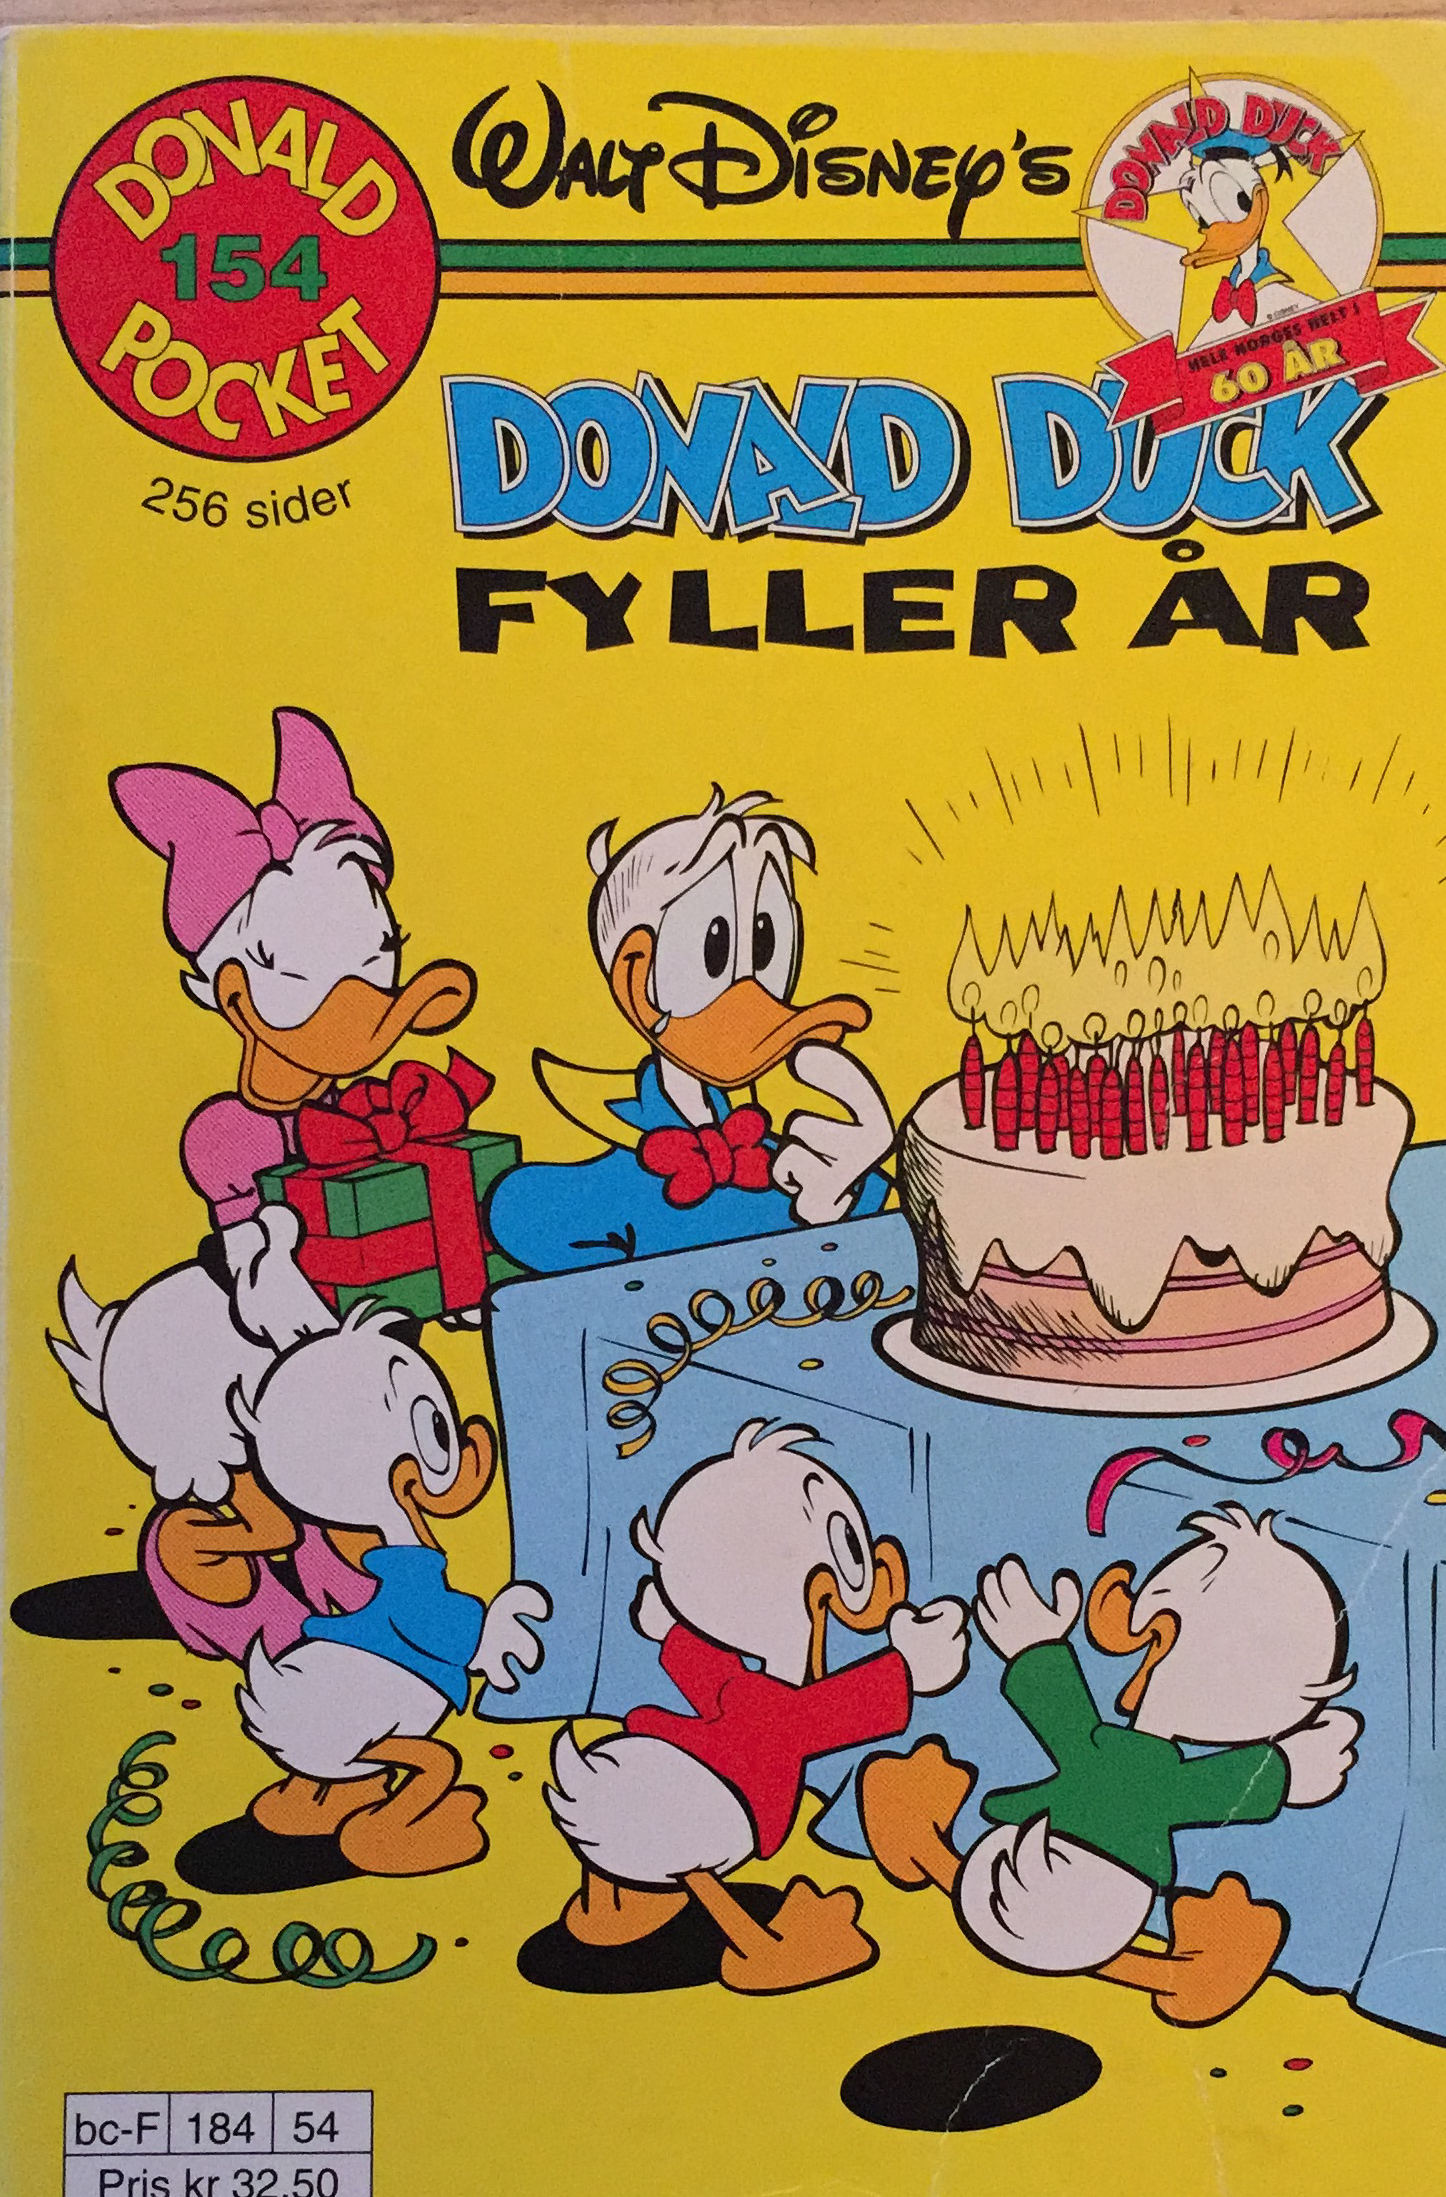 Nr.154 - Donald Duck fyller år